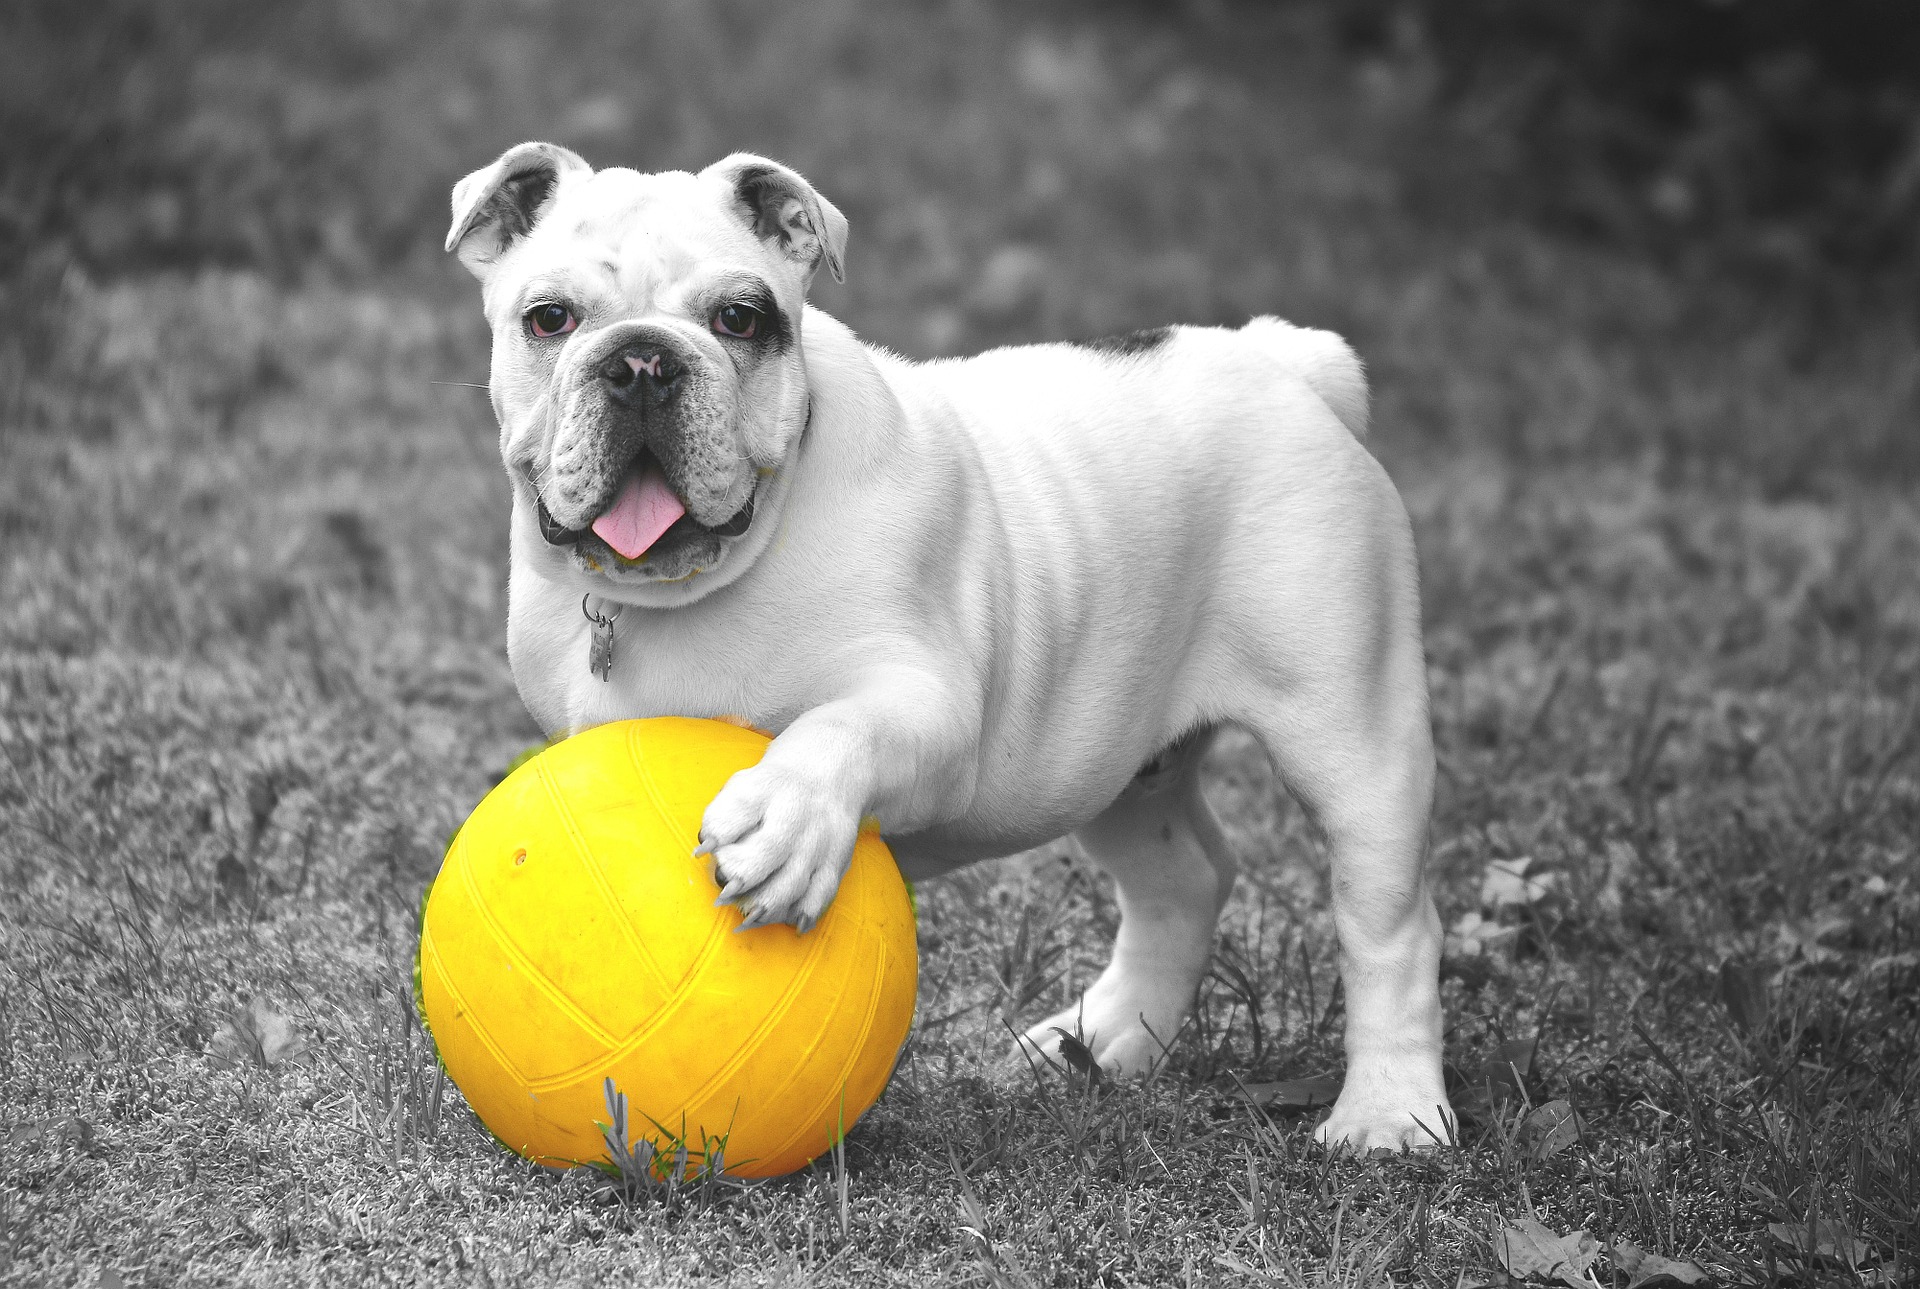 Bulldog With a Yellow Ball by Anja Osenberg